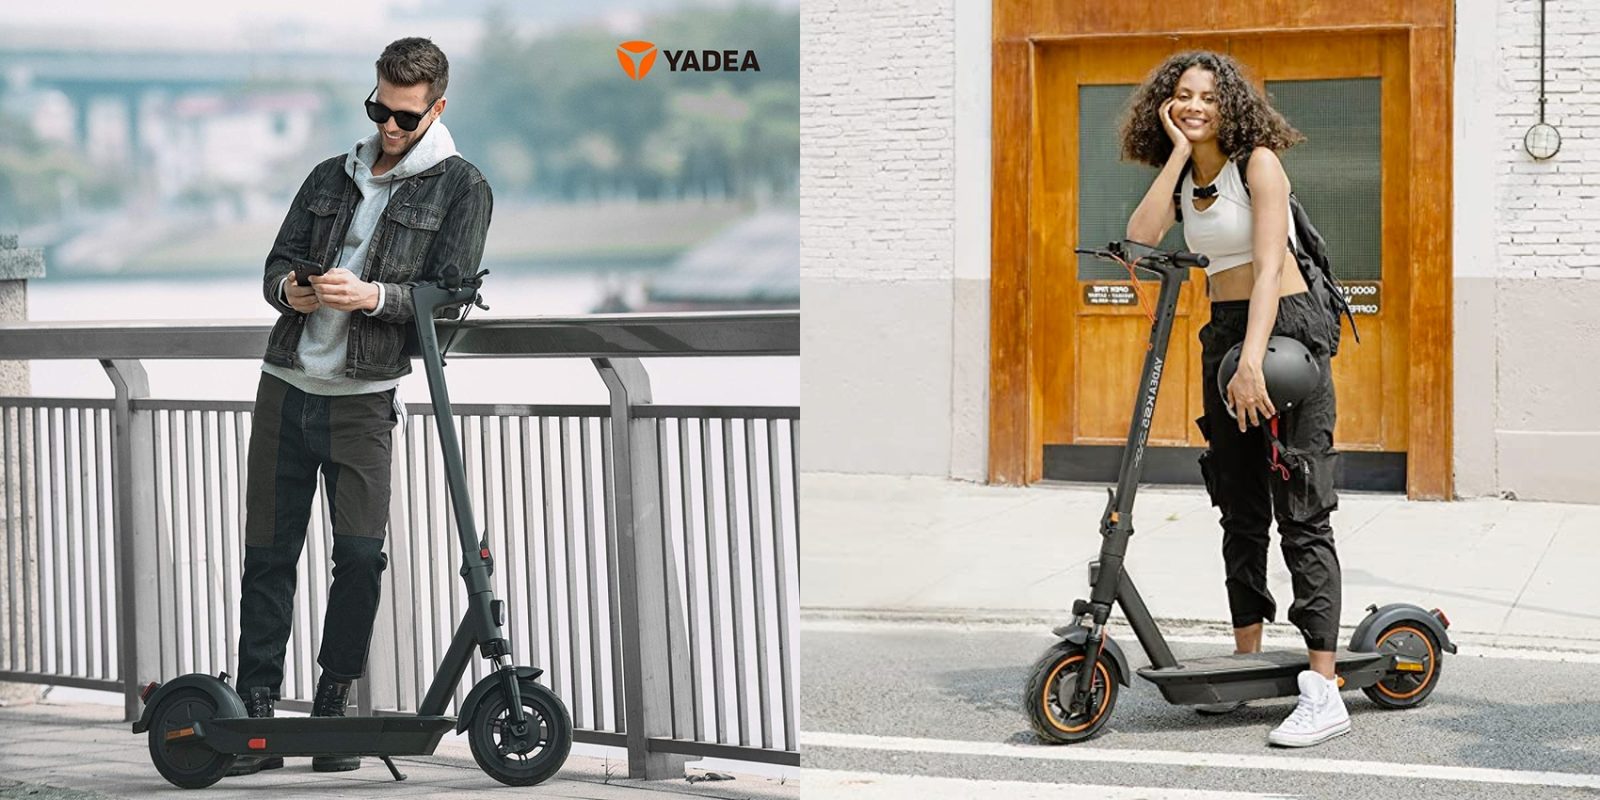 yadea ks5 electric scooter